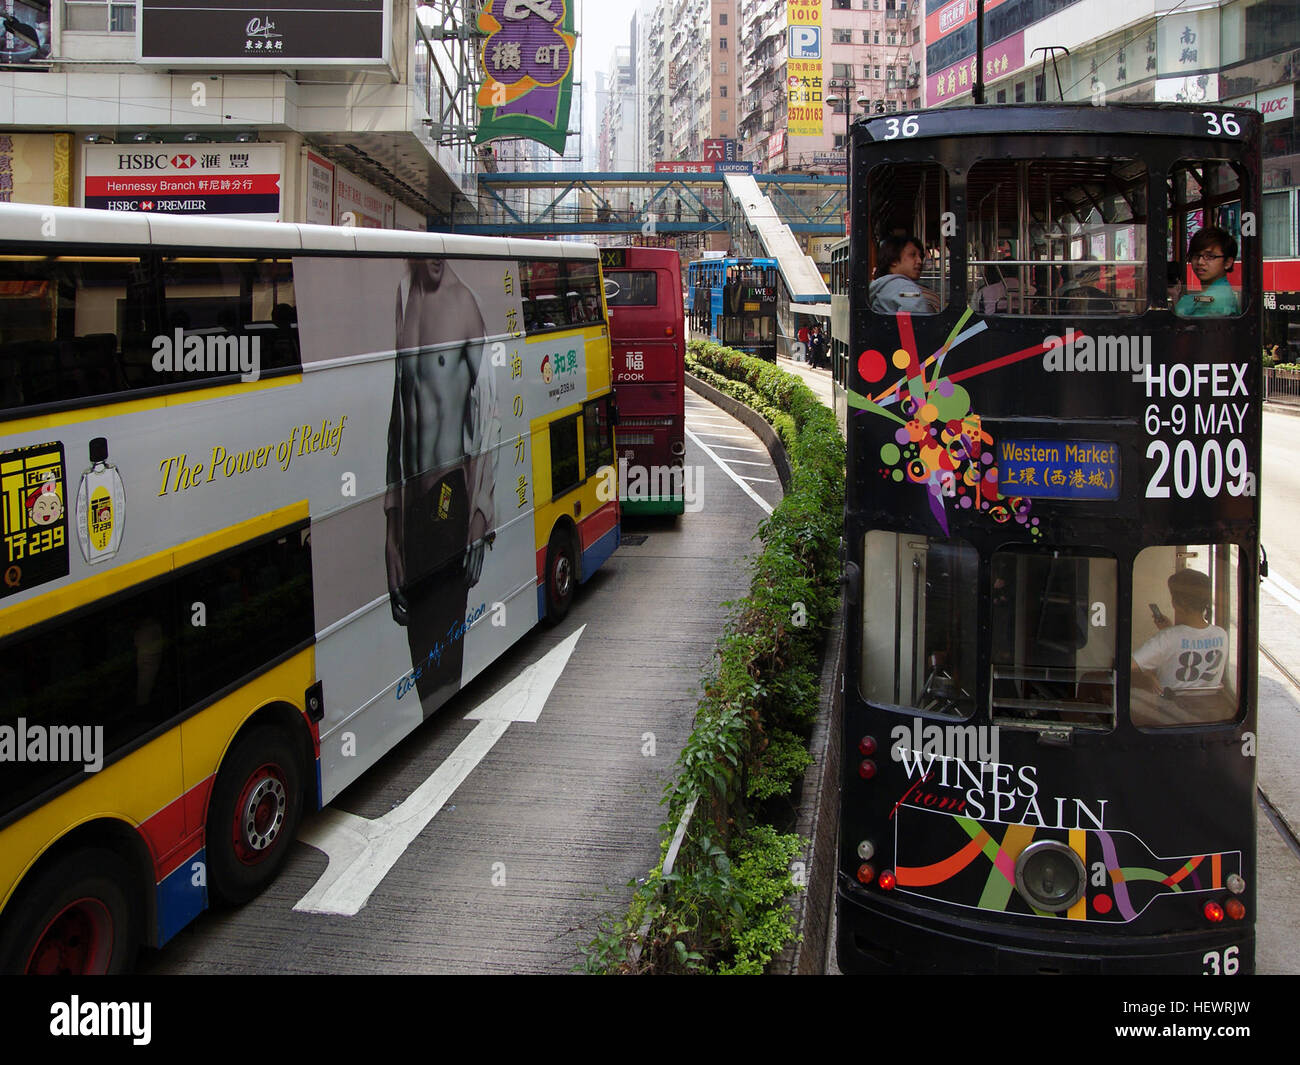 Als Hong Kong Tramways gegründet wurde, waren die 26 Triebwagen der first Fleet alle Single-Deck. Nach mehr als 100 Jahren wir besitzen und betreiben eine Flotte von 163 Straßenbahnen umfasst 2 antiken Straßenbahnen. Es ist die weltweit größte Flotte von Doppelstock-Triebwagen noch in Betrieb, mit einem Durchschnitt von 230.000 Fahrgäste täglich. - Stockfoto